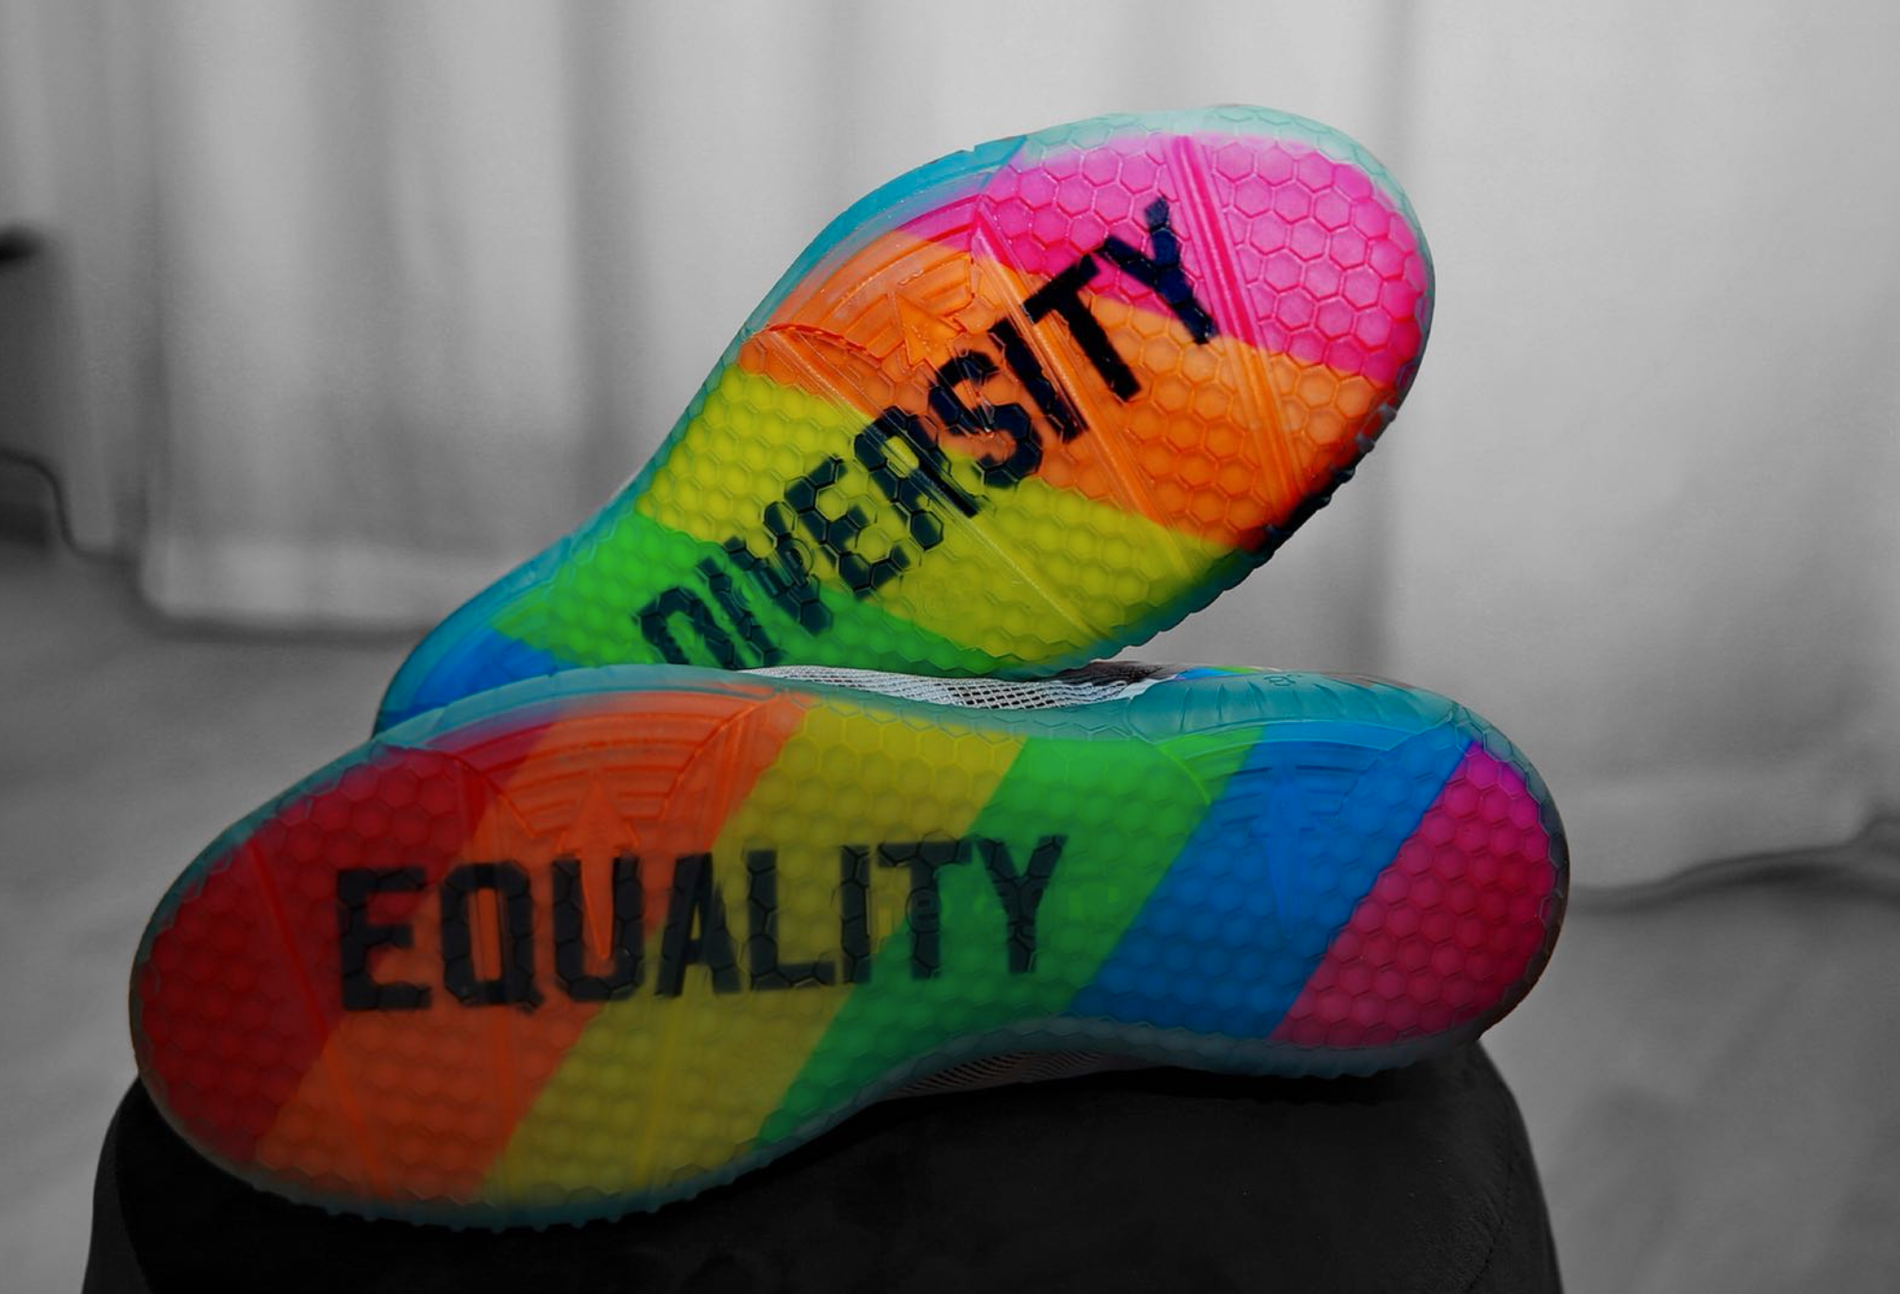 Regnbågsfärger och budskapen ”Mångfald” och ”Jämlikhet” pryder sulorna på Tobias Karlssons nya handbollsskor.